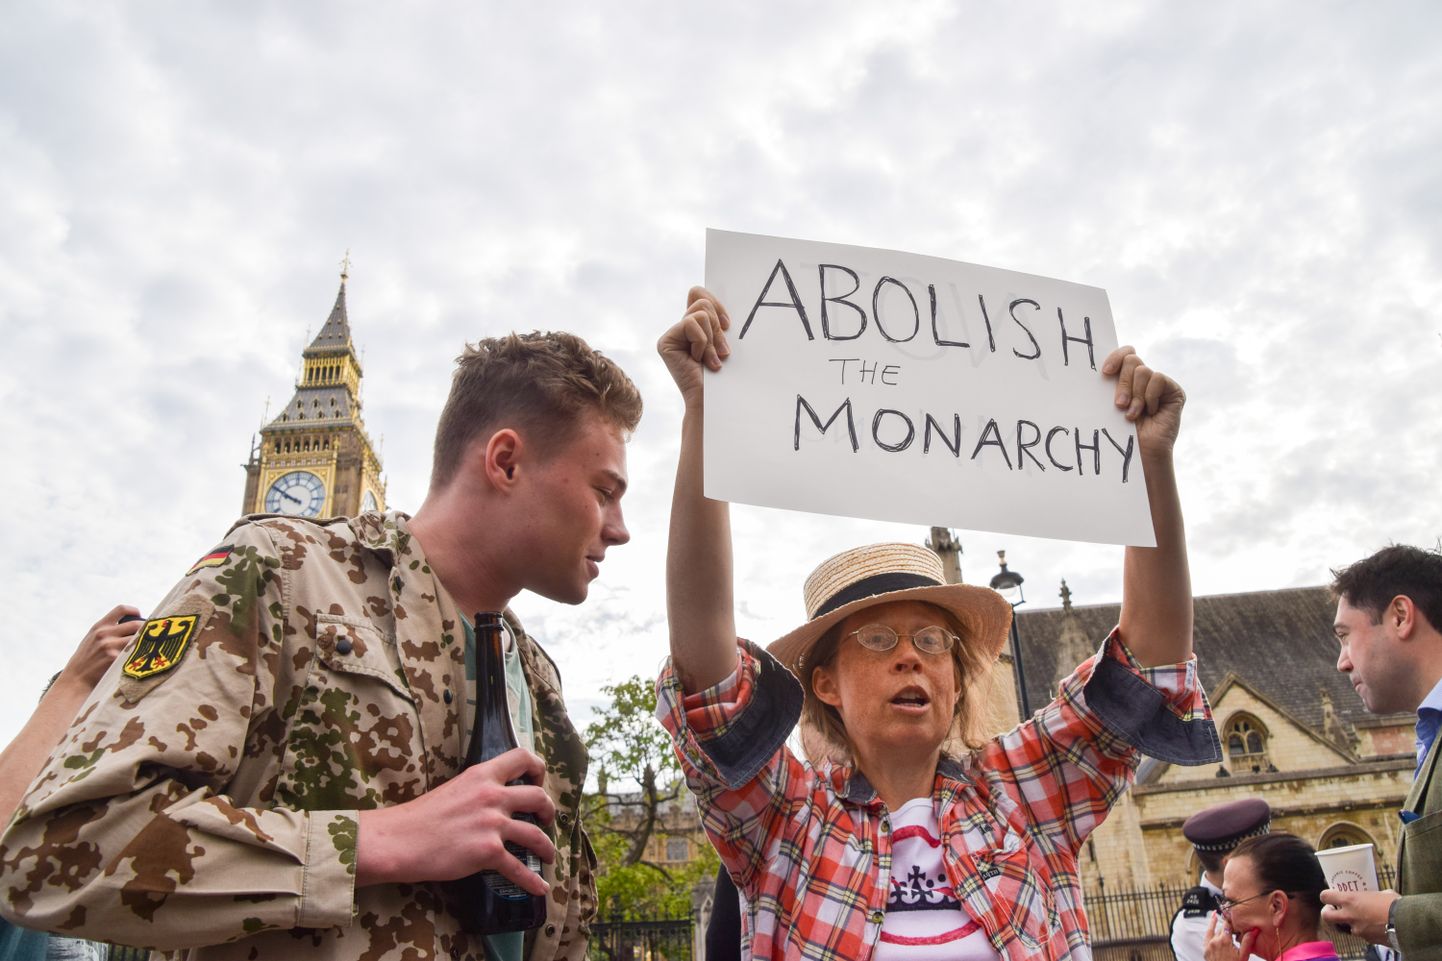 Protestija 12. septembril 2022 Londonis parlamendihoone juures, nõudes monarhia kaotamist